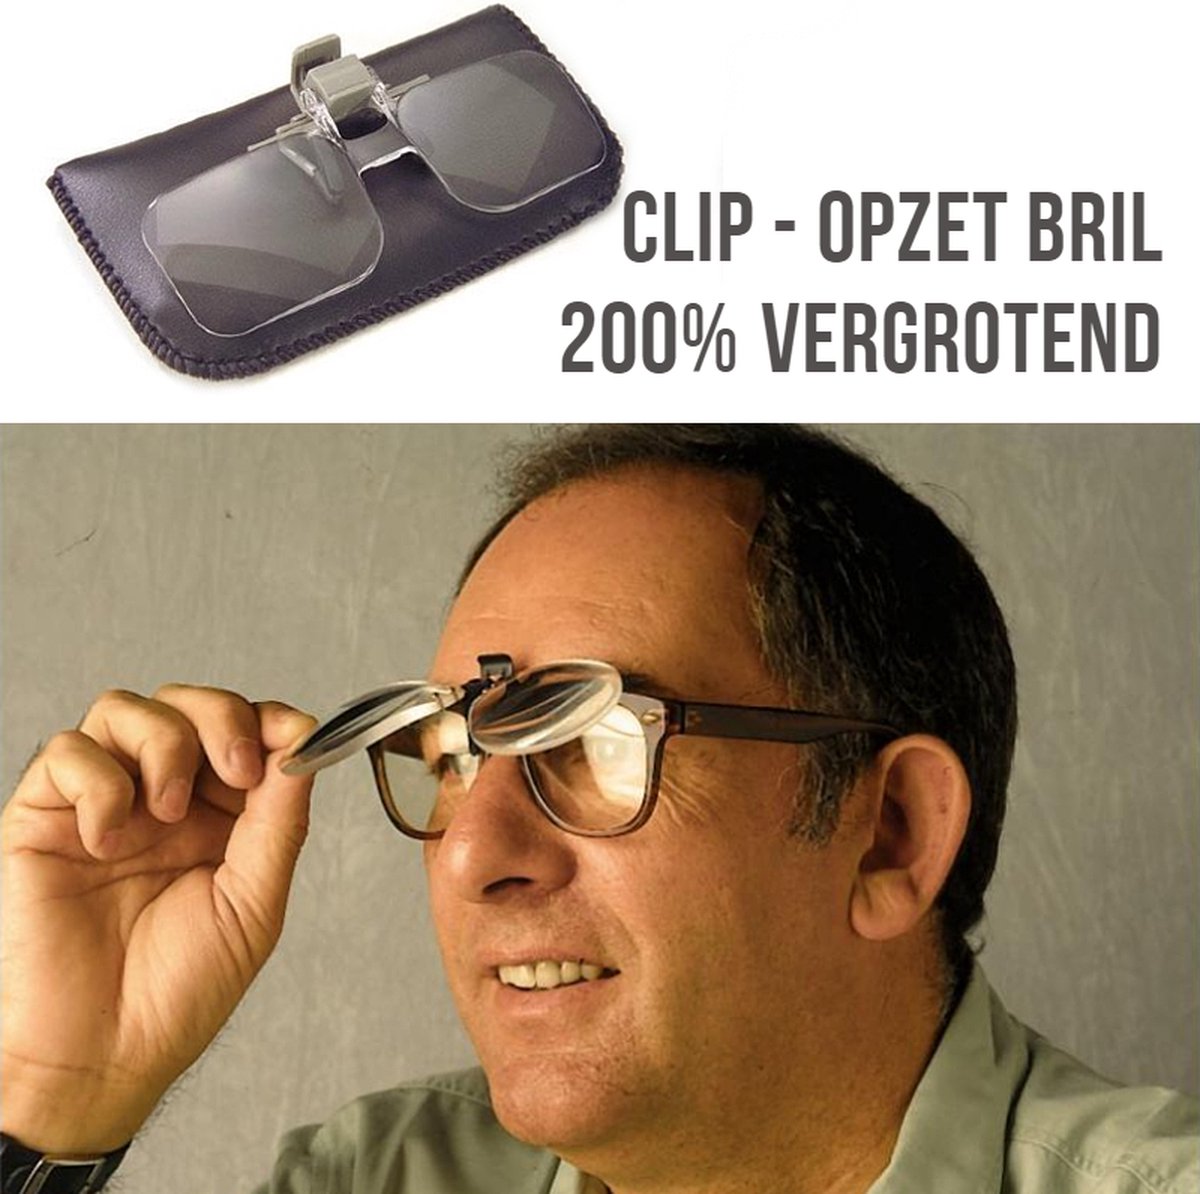 Allernieuwste Loepbril Vergrotende Opzet-Bril - Vergrotend - Klemmen op je Bril - Vergrootbril - Overzetbril - Vergrootglas Bril 2x - Clip On Klem Leesbril - Merkloos